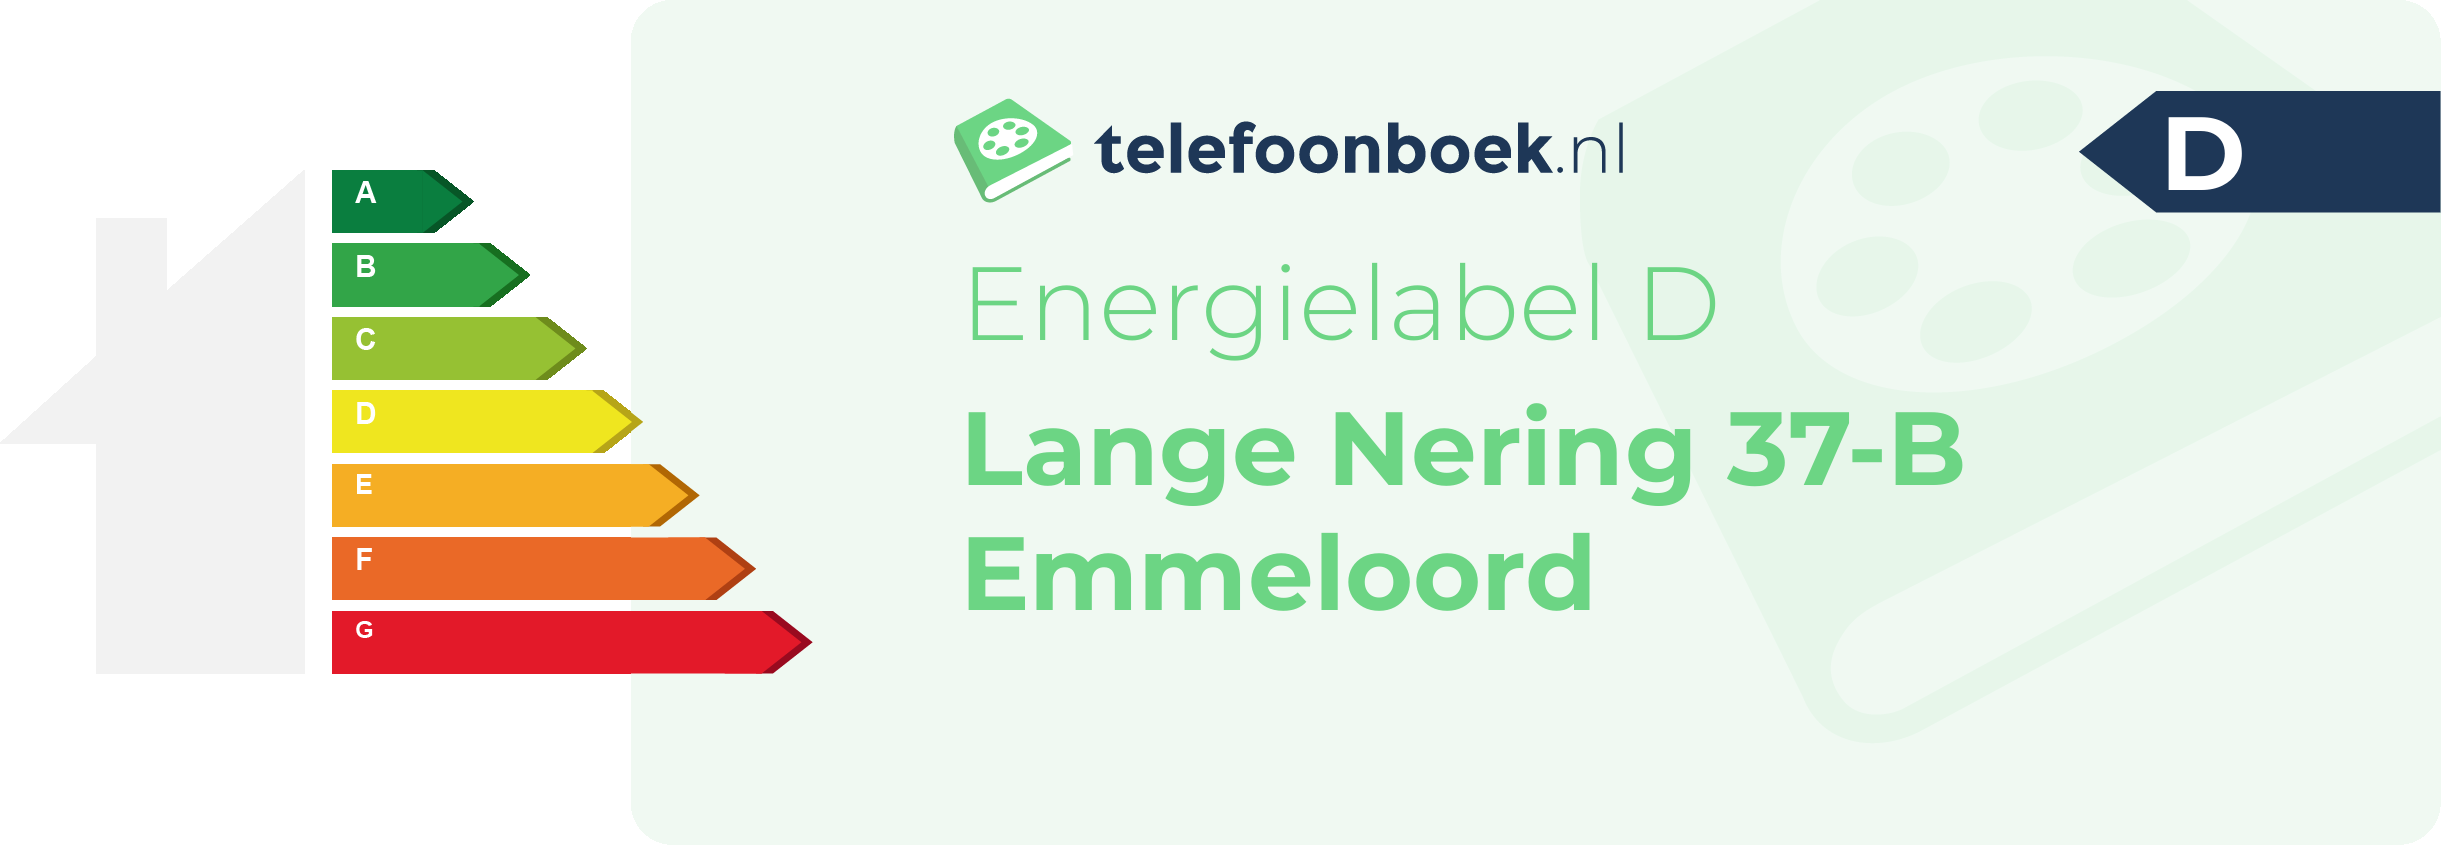 Energielabel Lange Nering 37-B Emmeloord